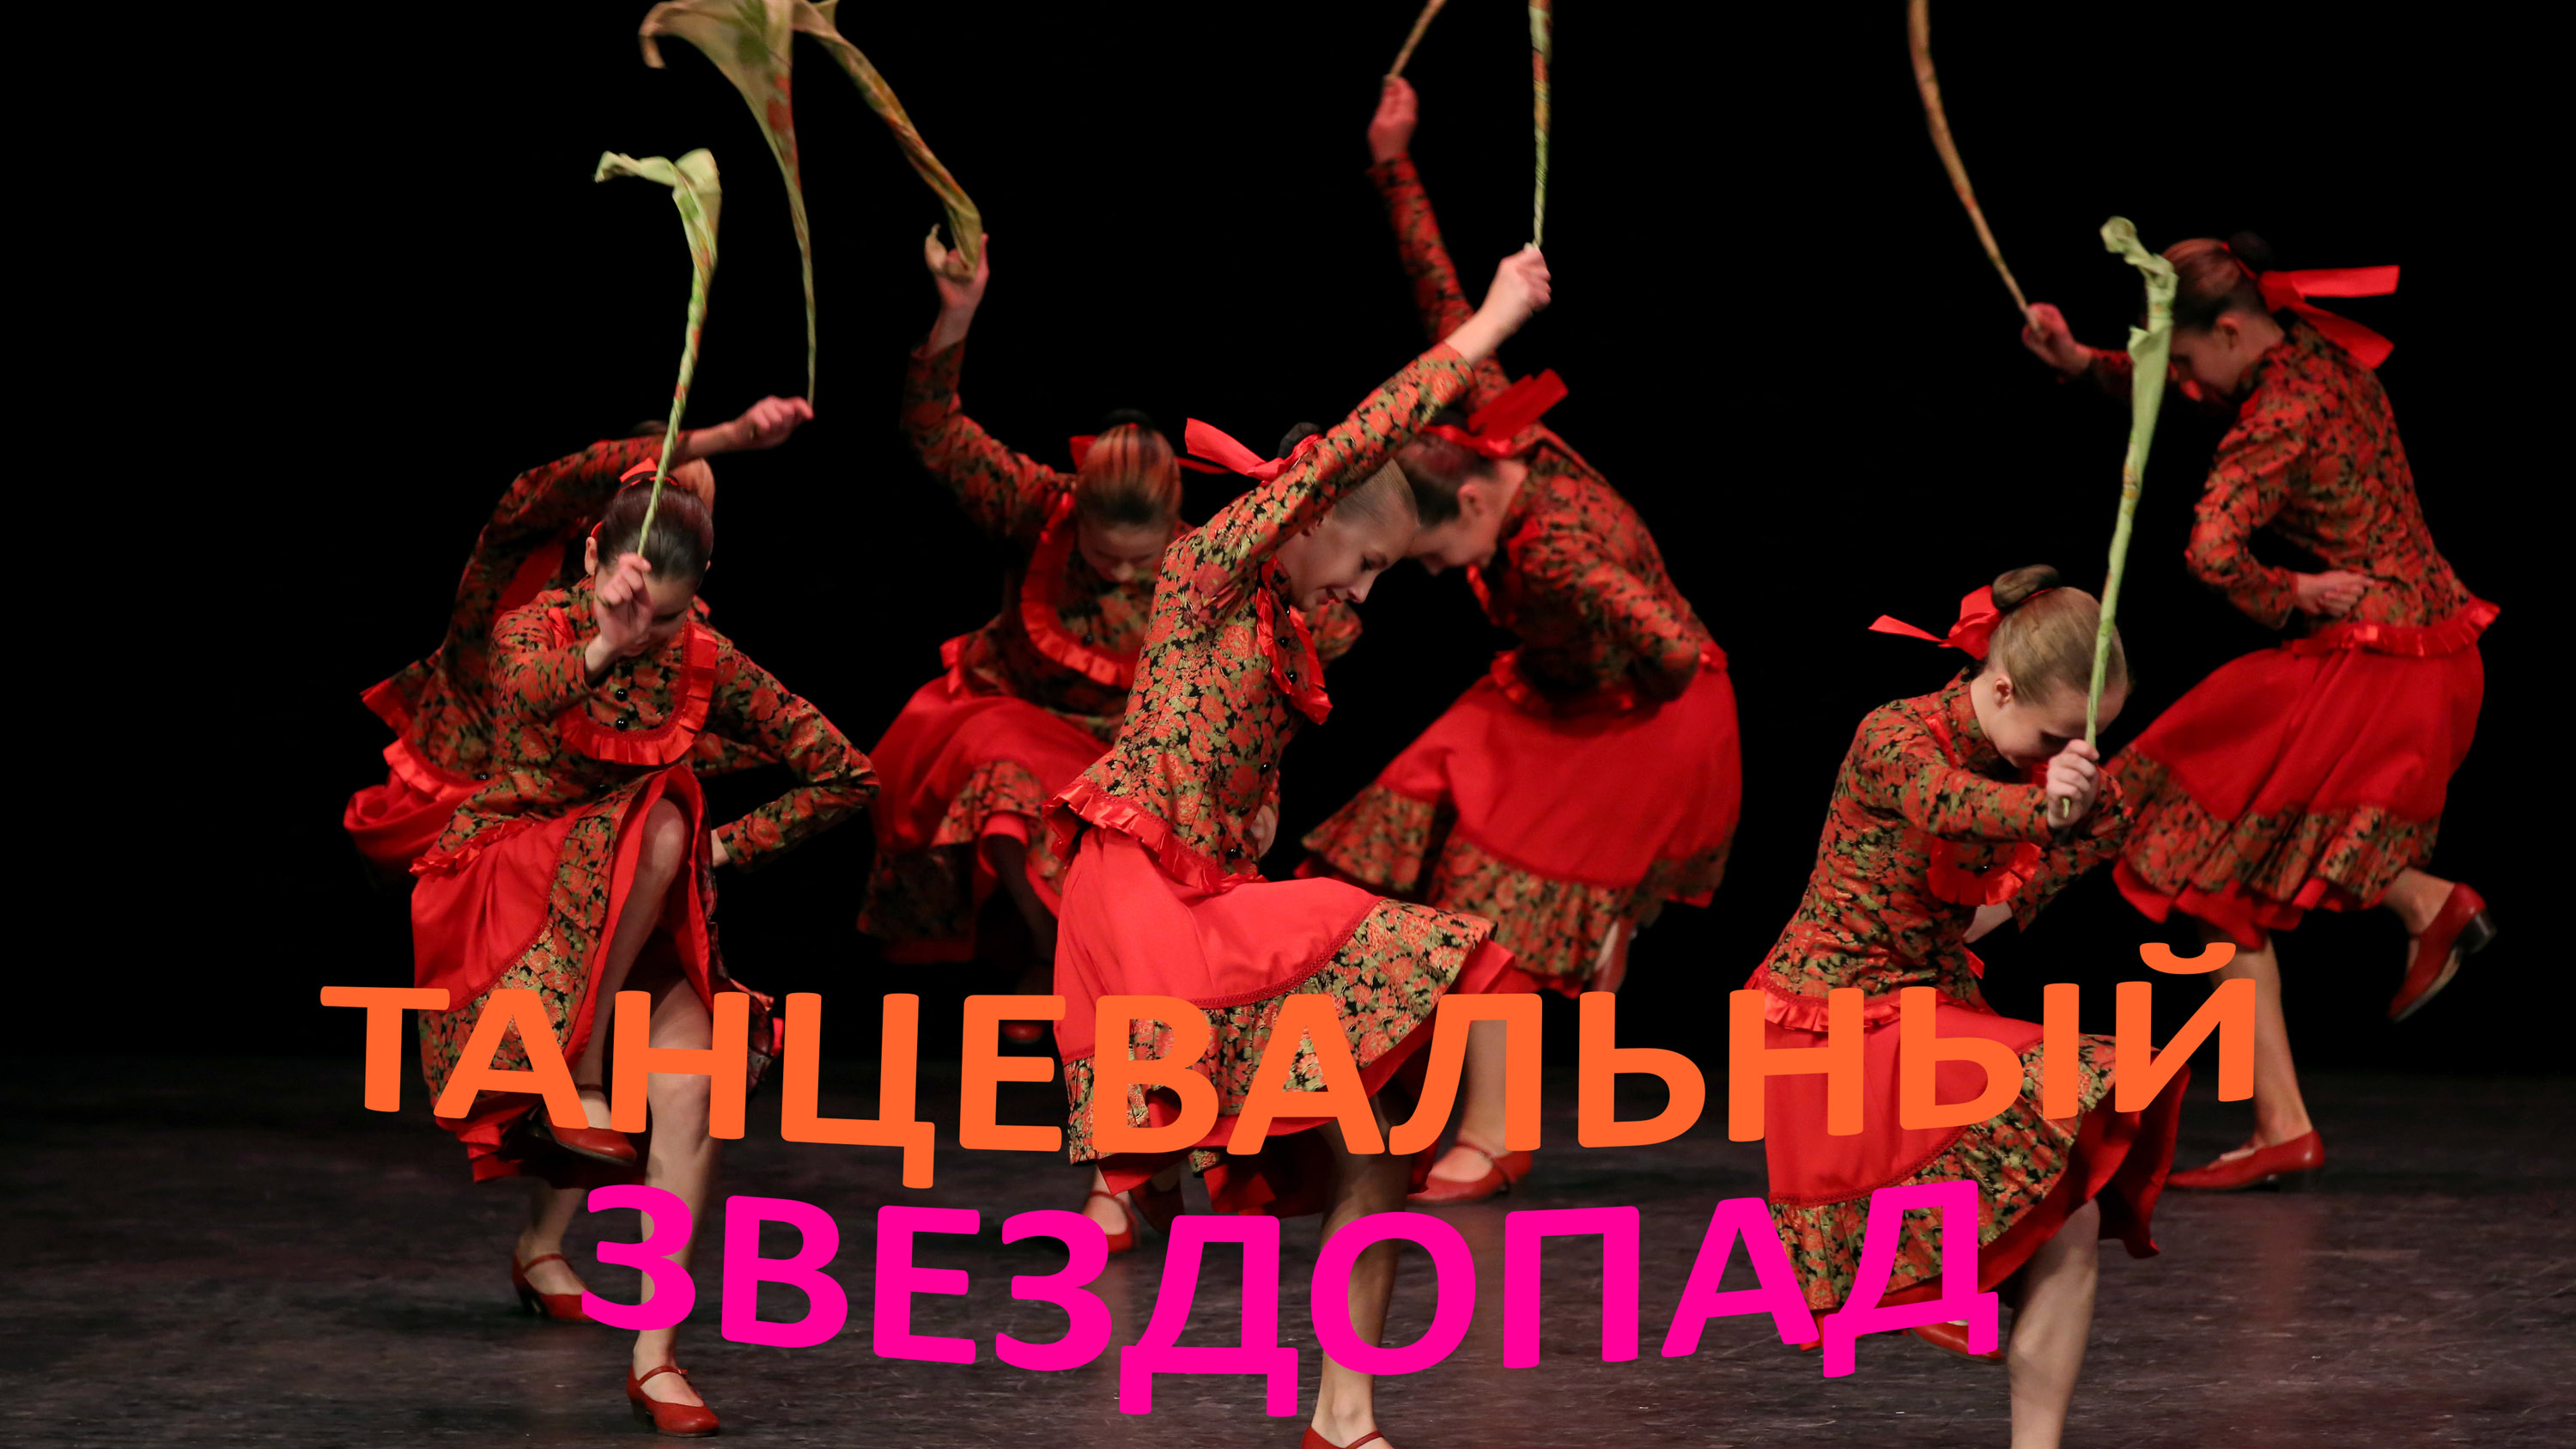 "Уральский сувенир", ансамбль "Школьные годы". "Ural Souvenir", ensemble "School Years".